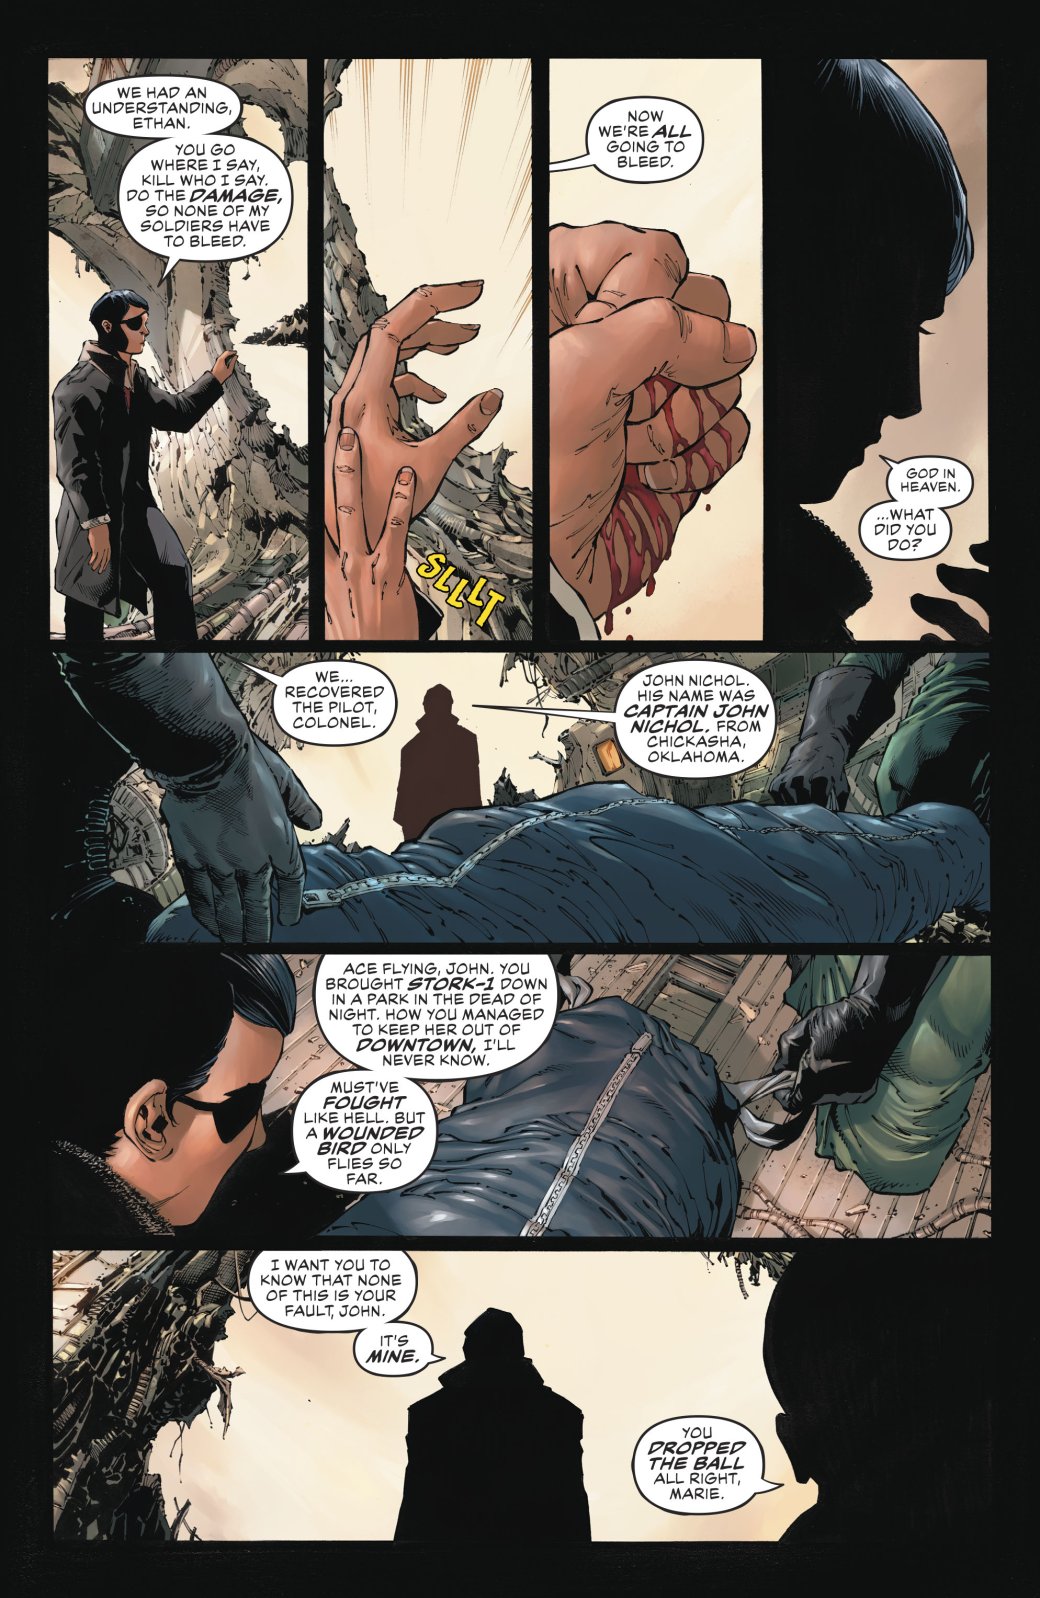 Галерея Издательство DC представило своего «Халка» в новом комиксе Damage - 2 фото